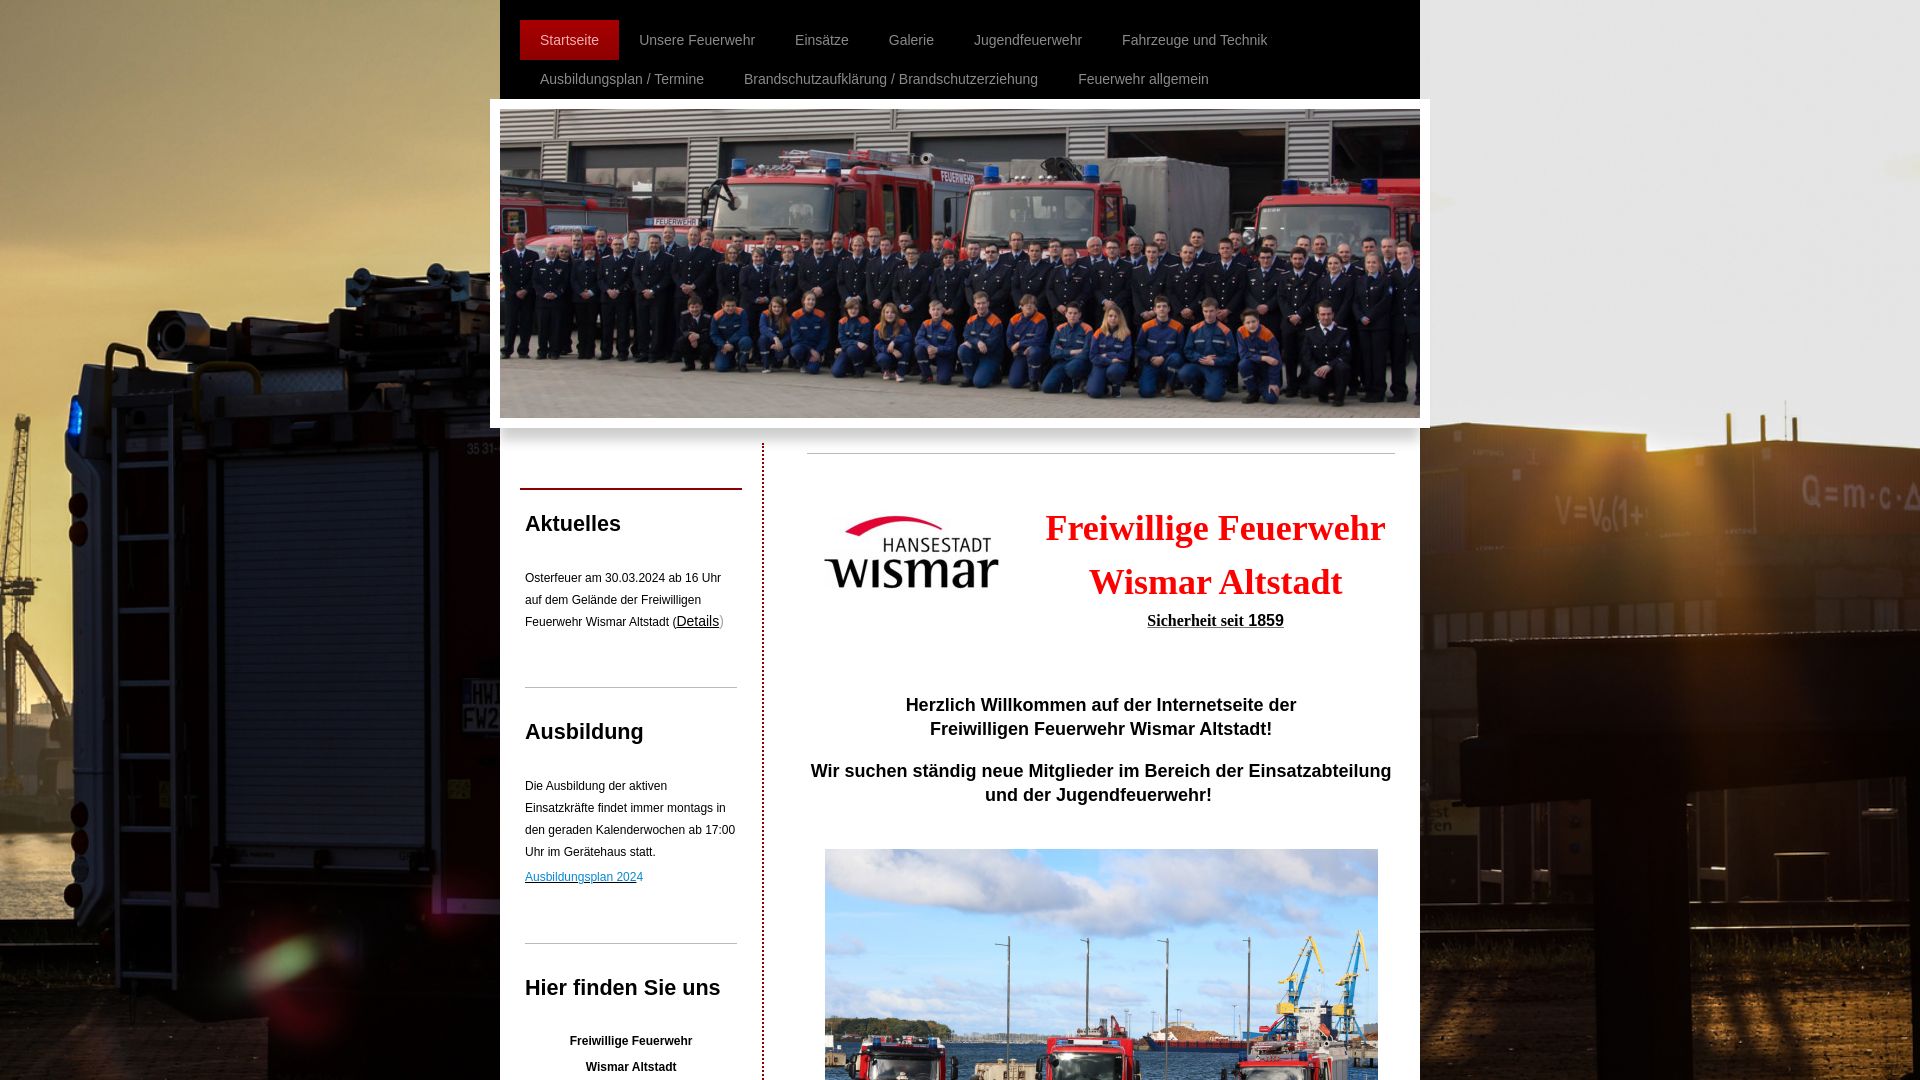 Website status ffw-wismar-altstadt.de is   ONLINE